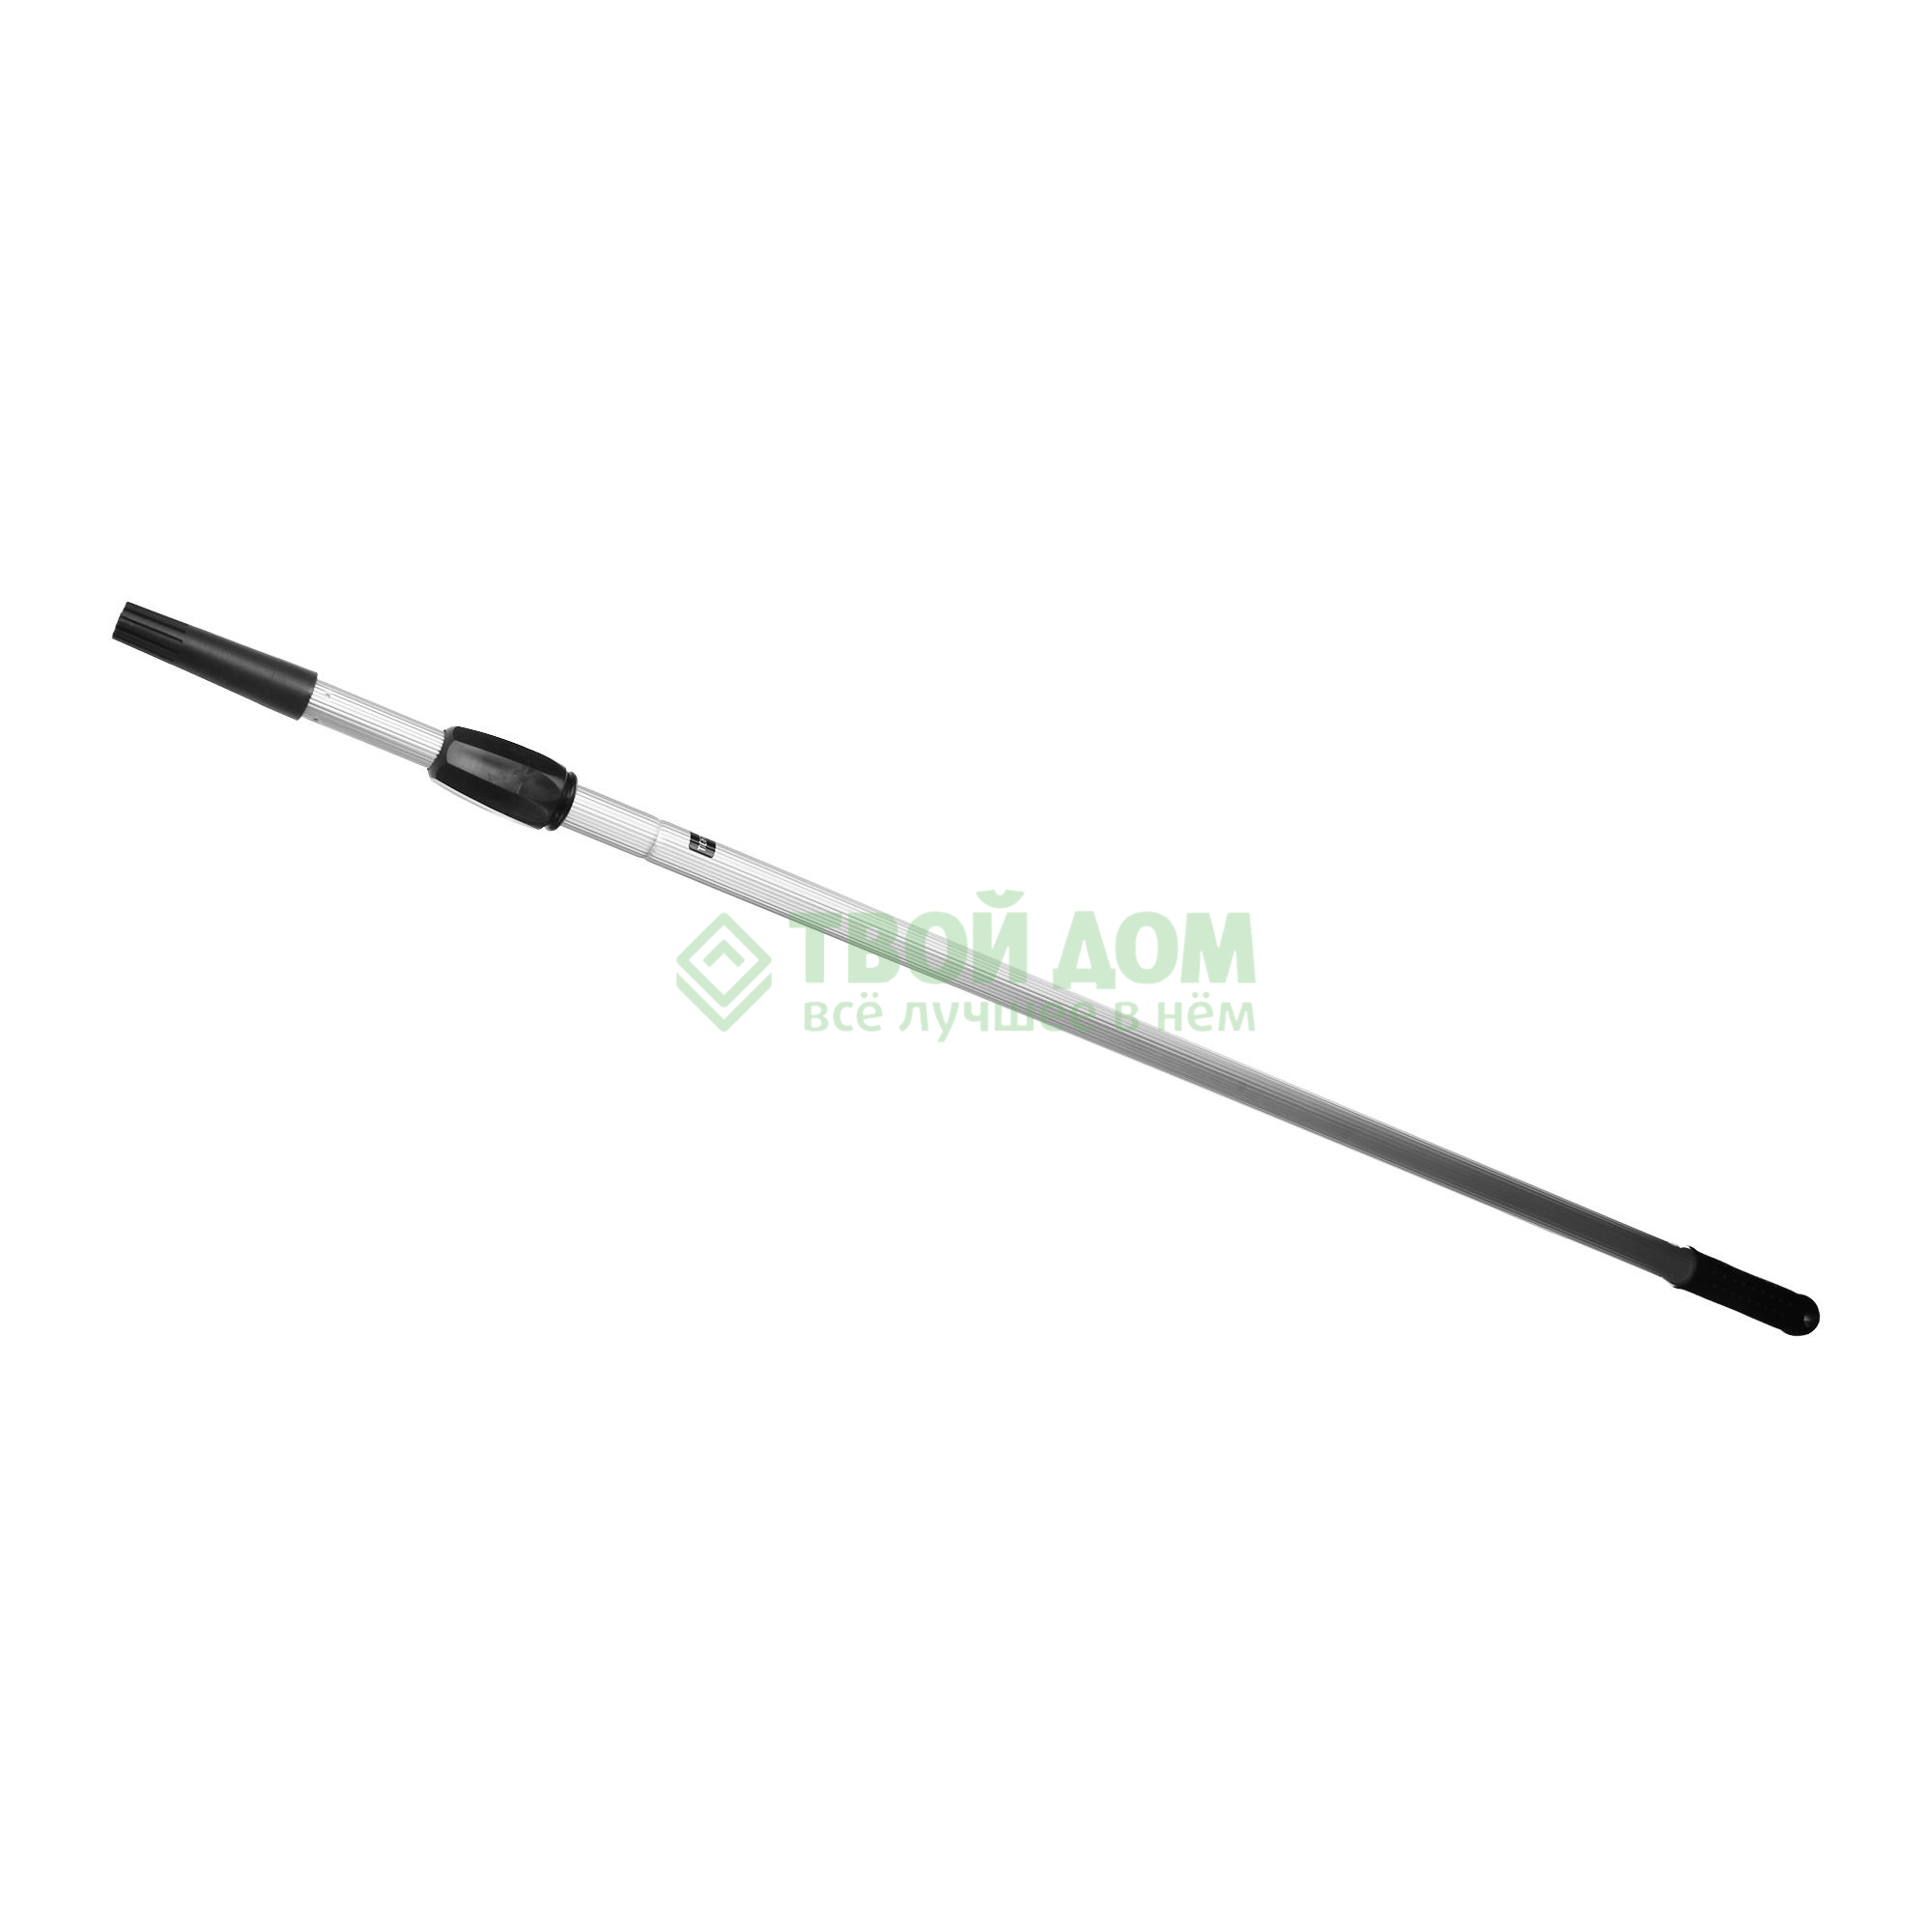 Ручка для швабры Apex 11516, цвет серый,  черный - фото 1